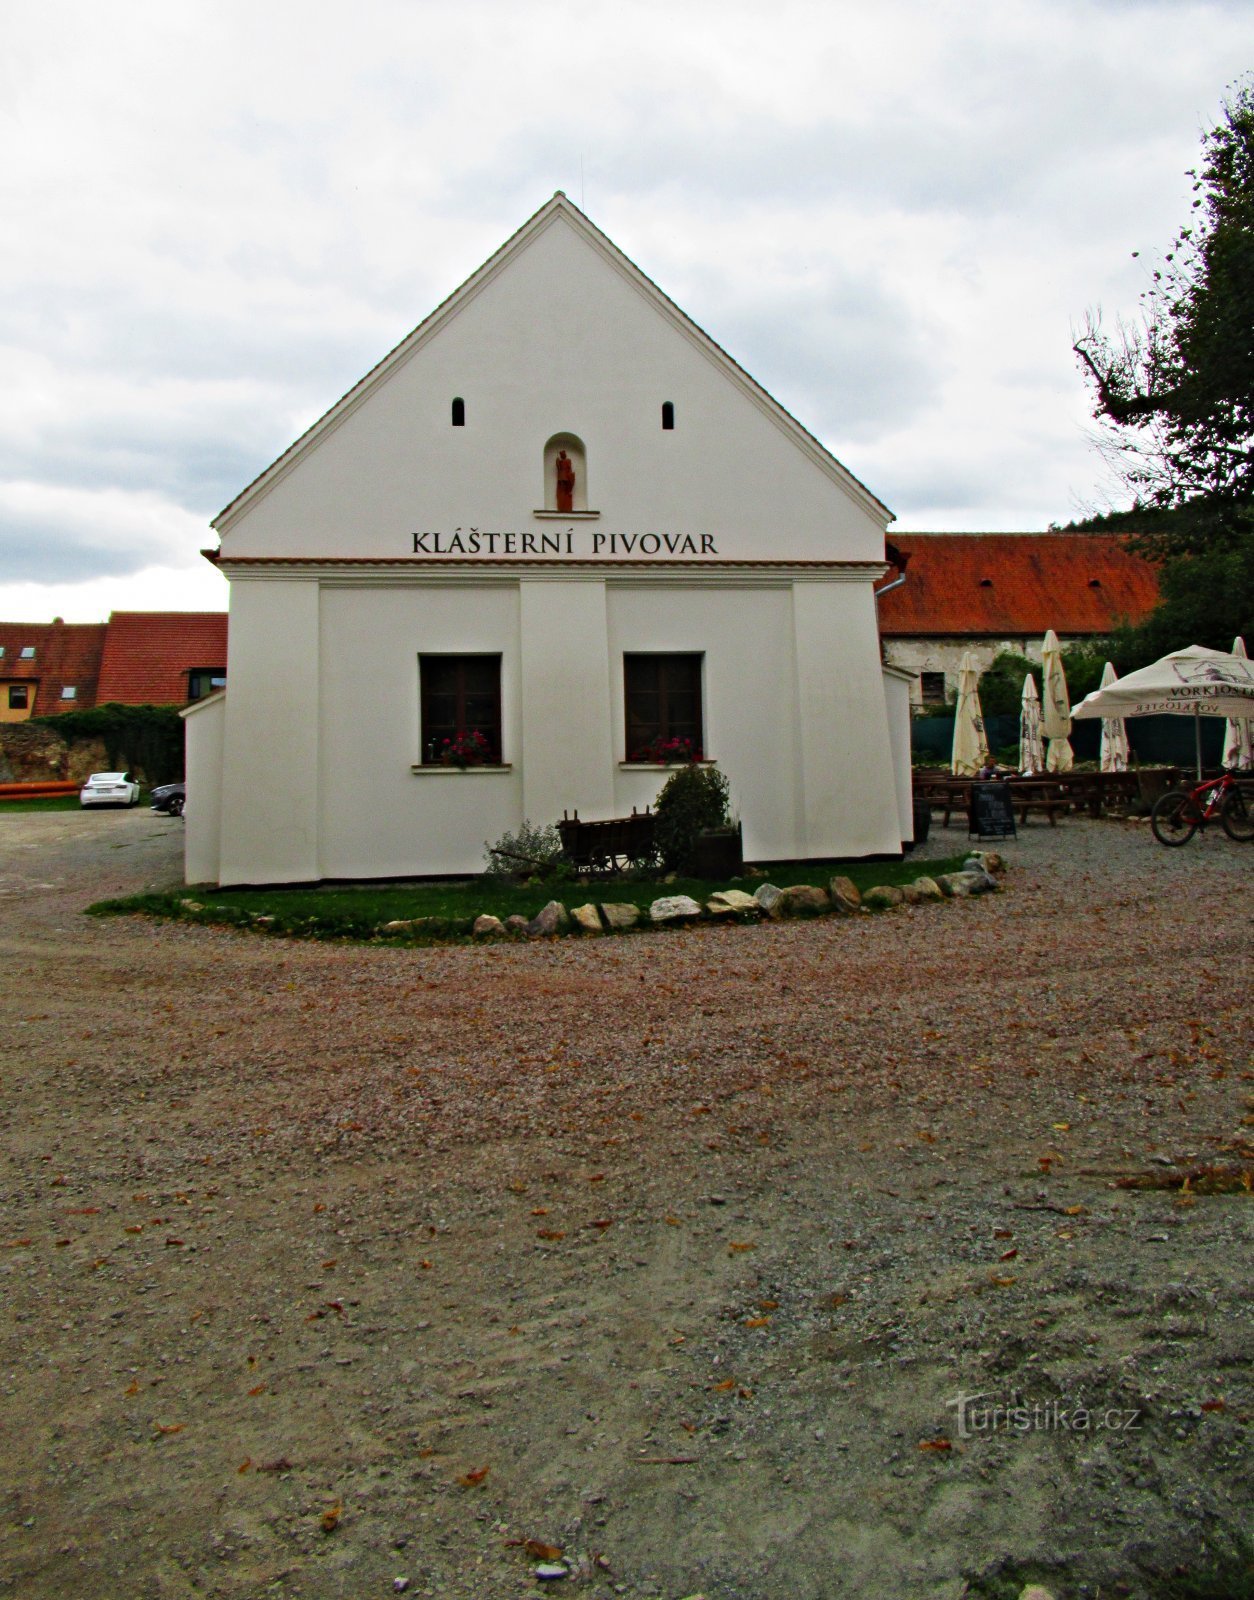 Tišnov 附近 Předklášteří 的一家小型家庭酿酒厂